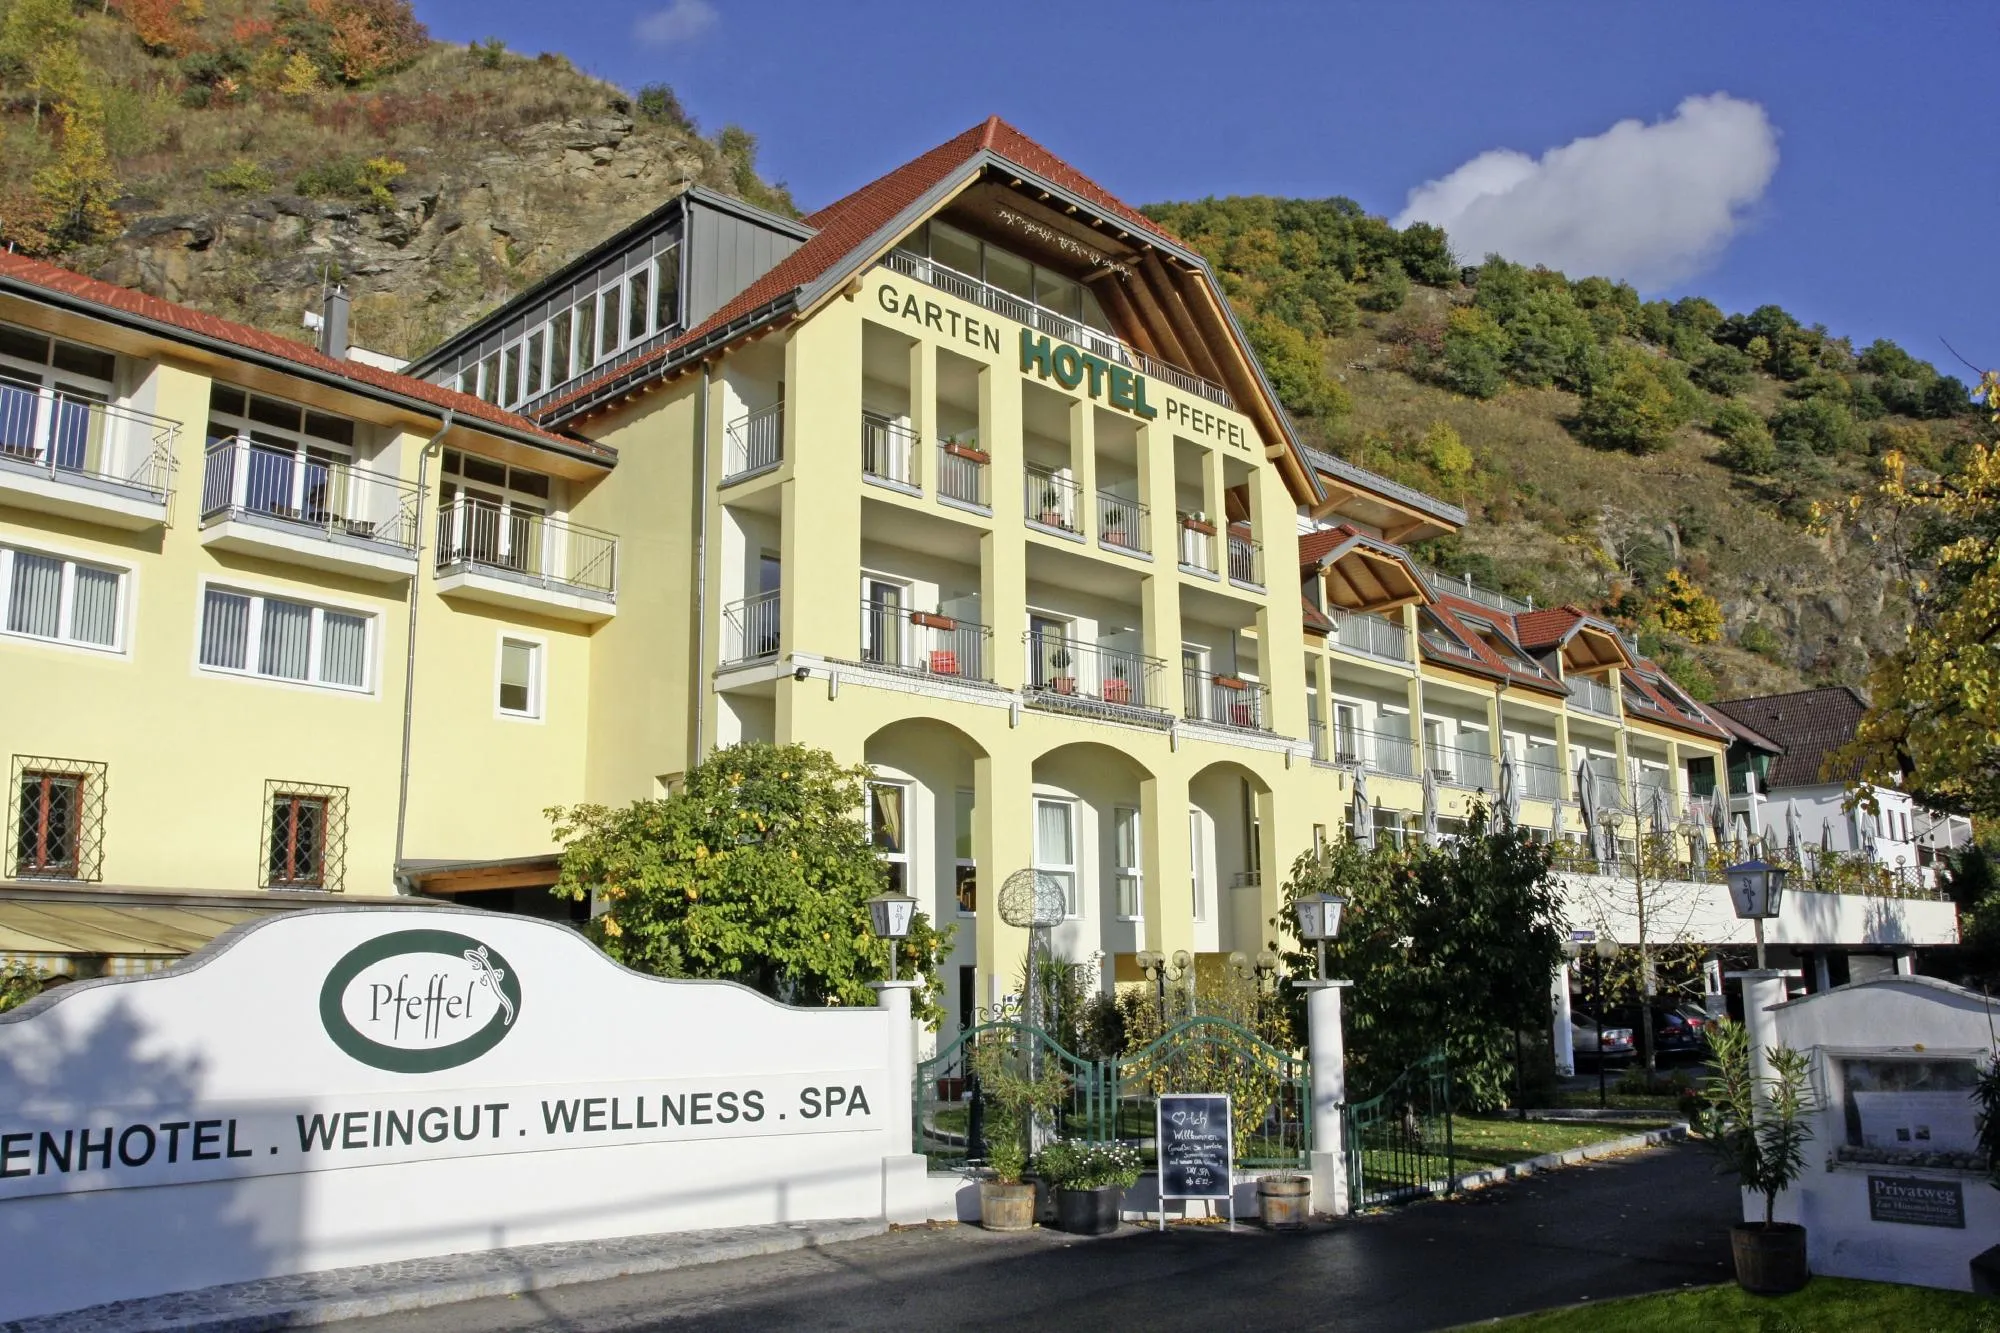 Building hotel Weingut Pfeffel Durnstein